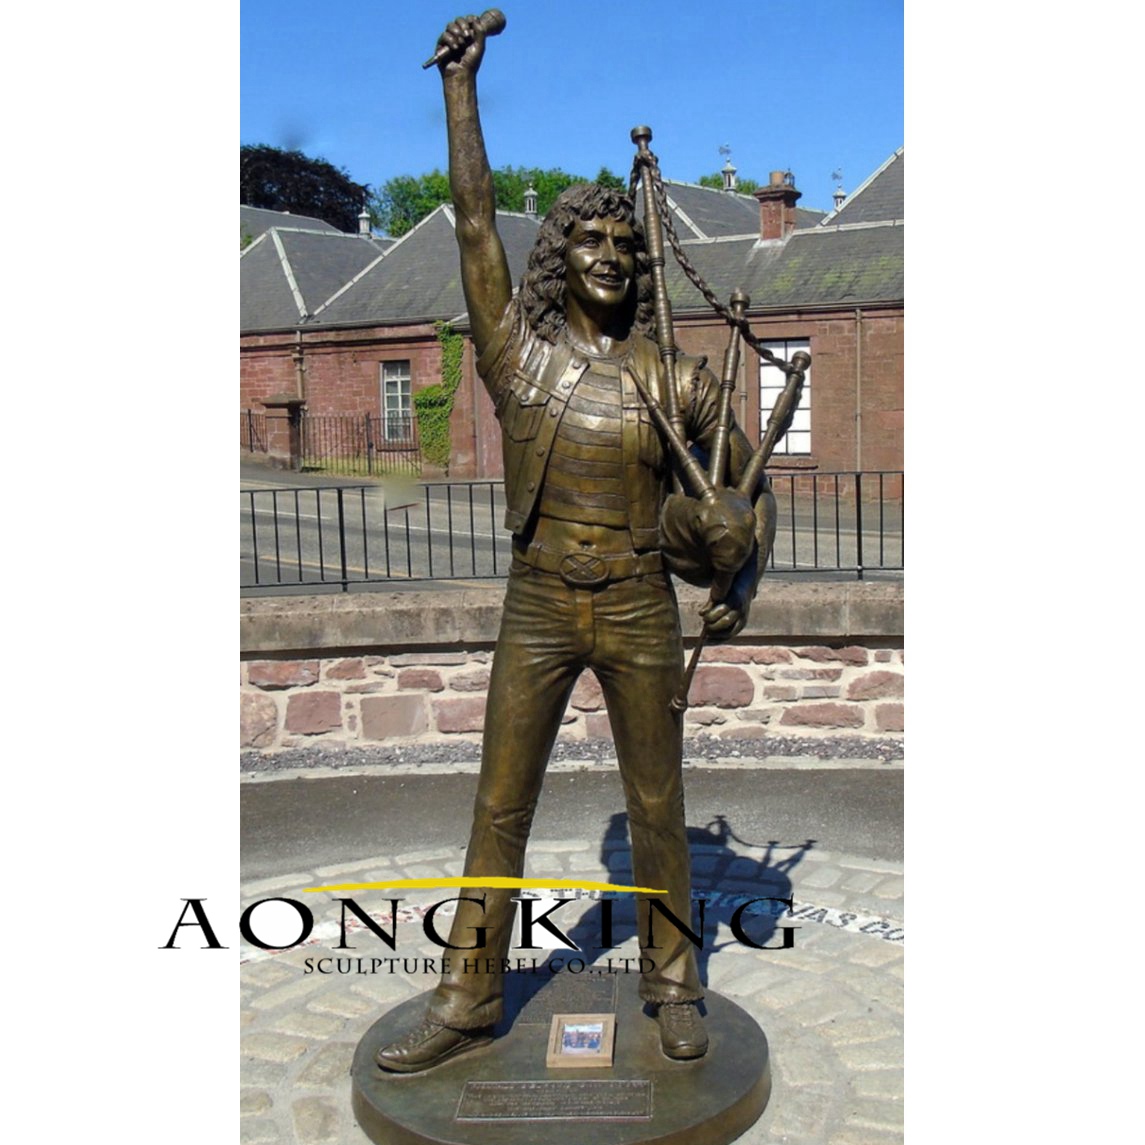 Bon scott bronze statue